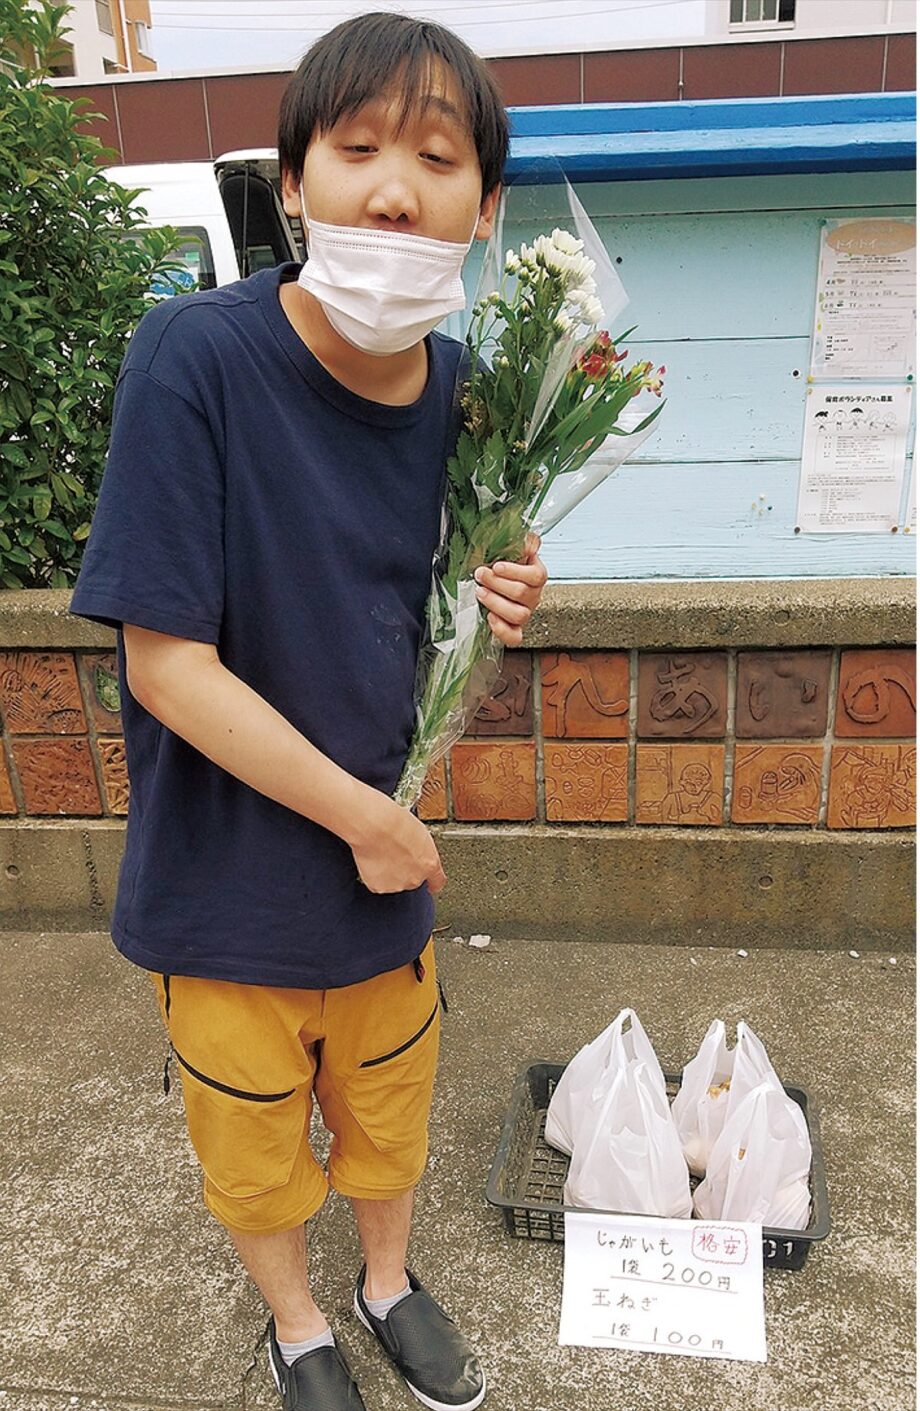 横浜市鶴見区の障がい者福祉施設「雑貨工房みらい」 感謝込め、花を限定配布 地域とのふれあいに